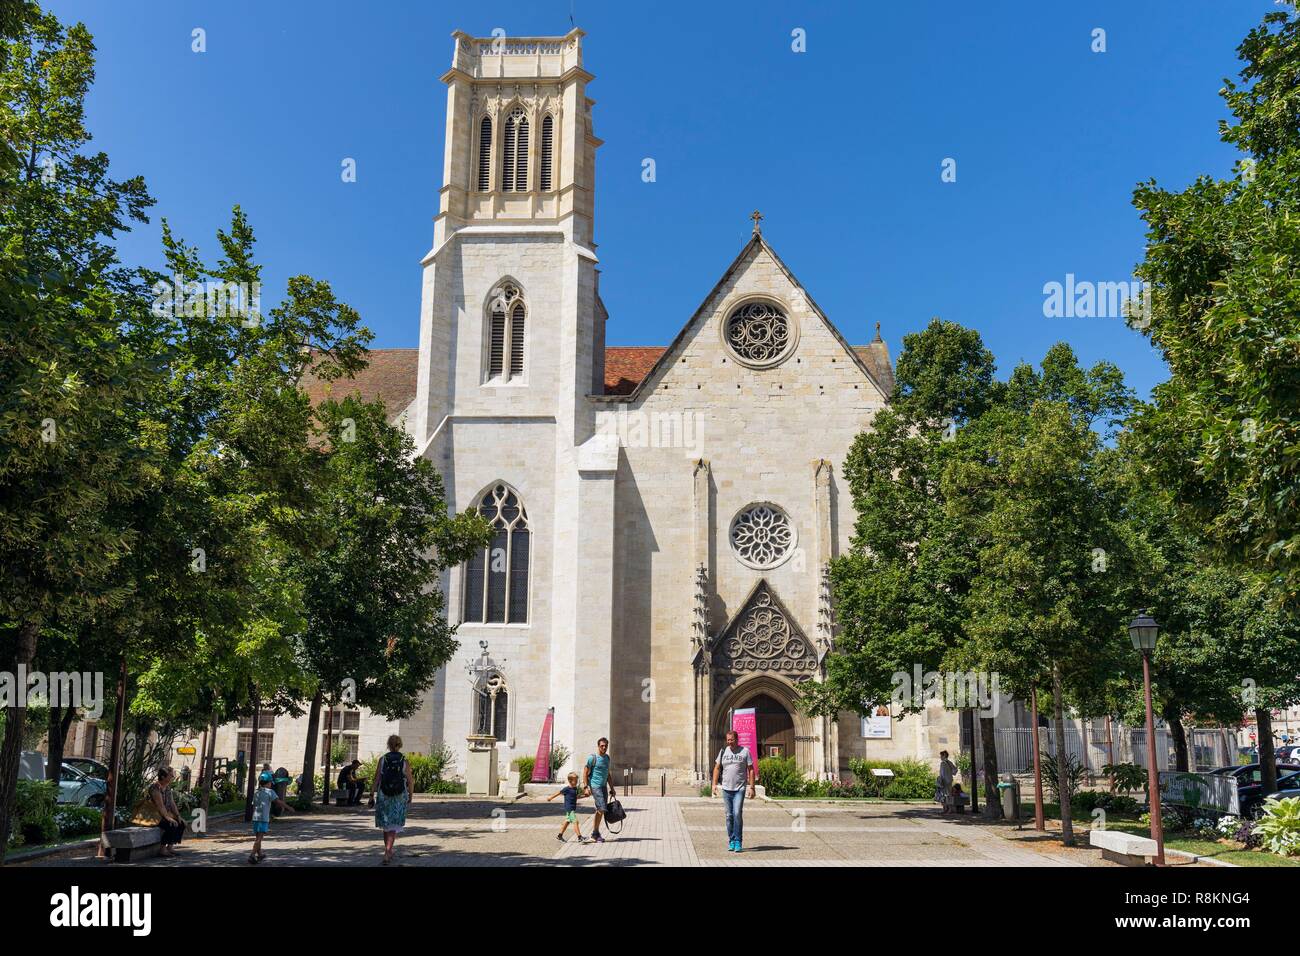 France, Lot et Garonne, Agen, Saint Caprais cathedral Stock Photo